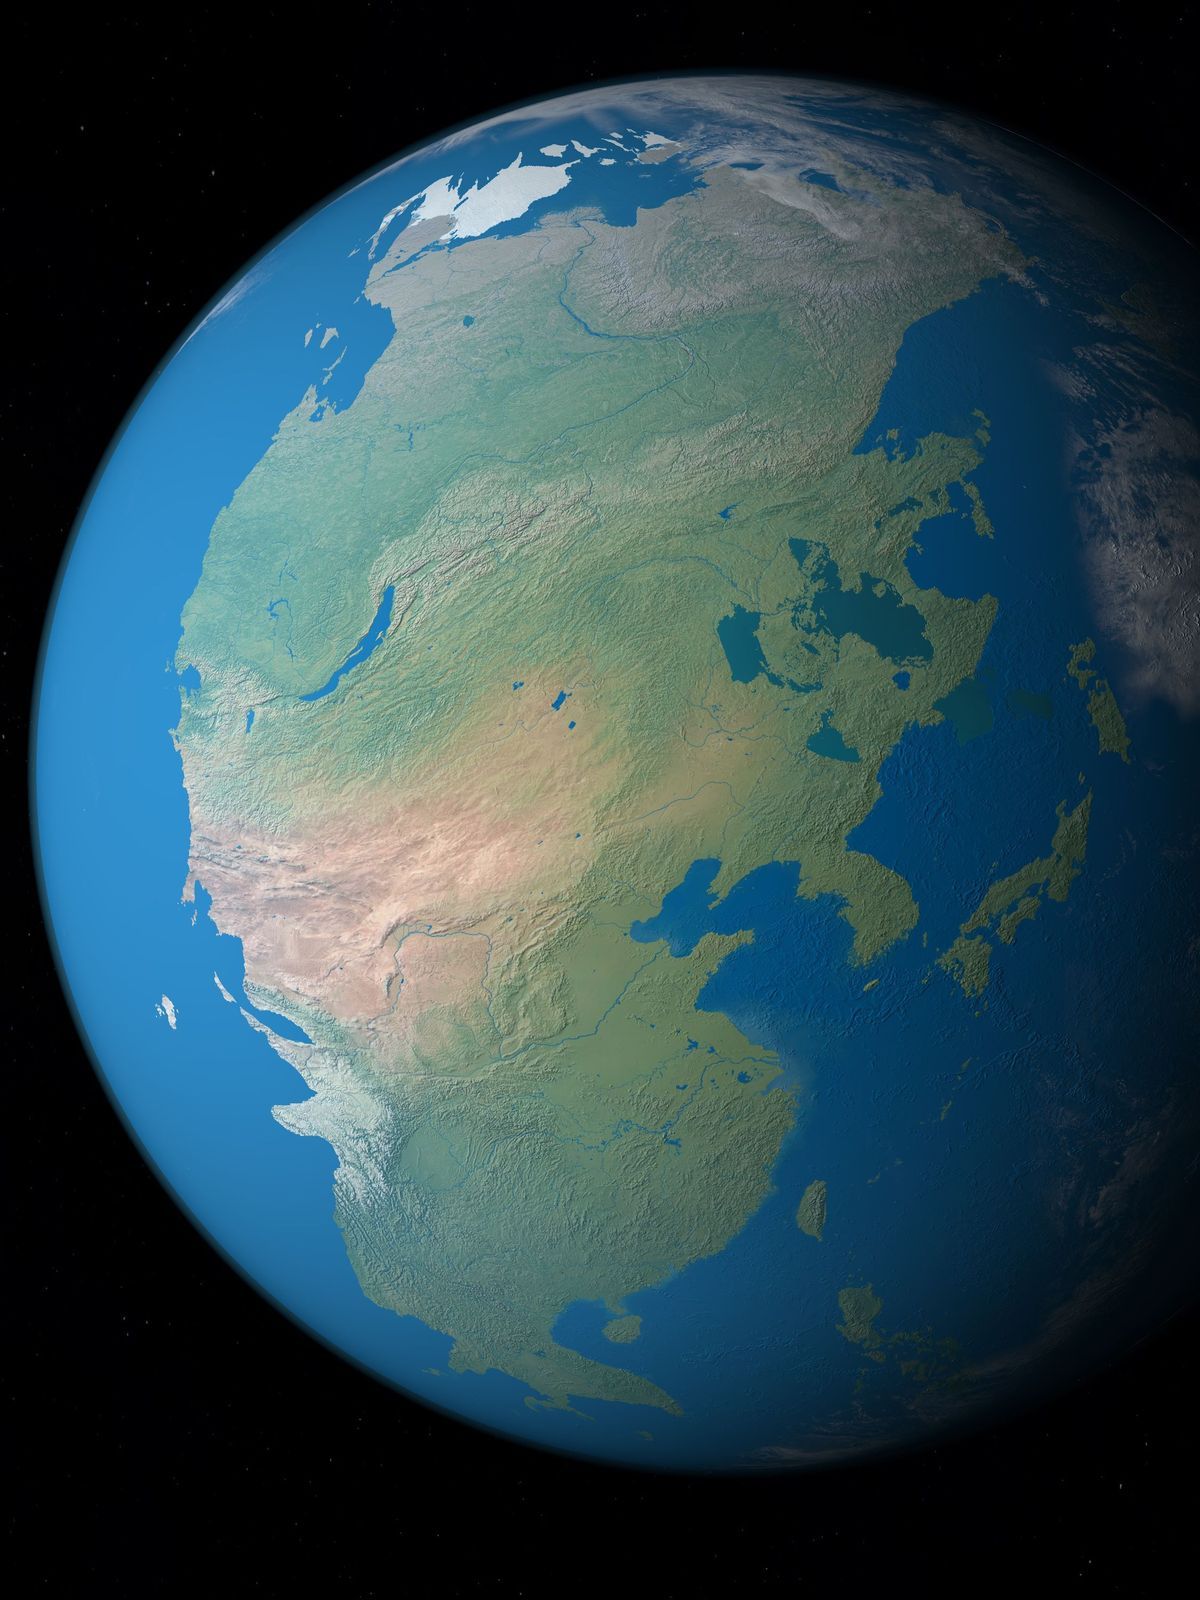 Ähnlich wie bei dem früheren Superkontinent Pangäa könnten Aurica oder Amasia mit den heutigen Kontinentalplatten einen neuen Superkontinent bilden.